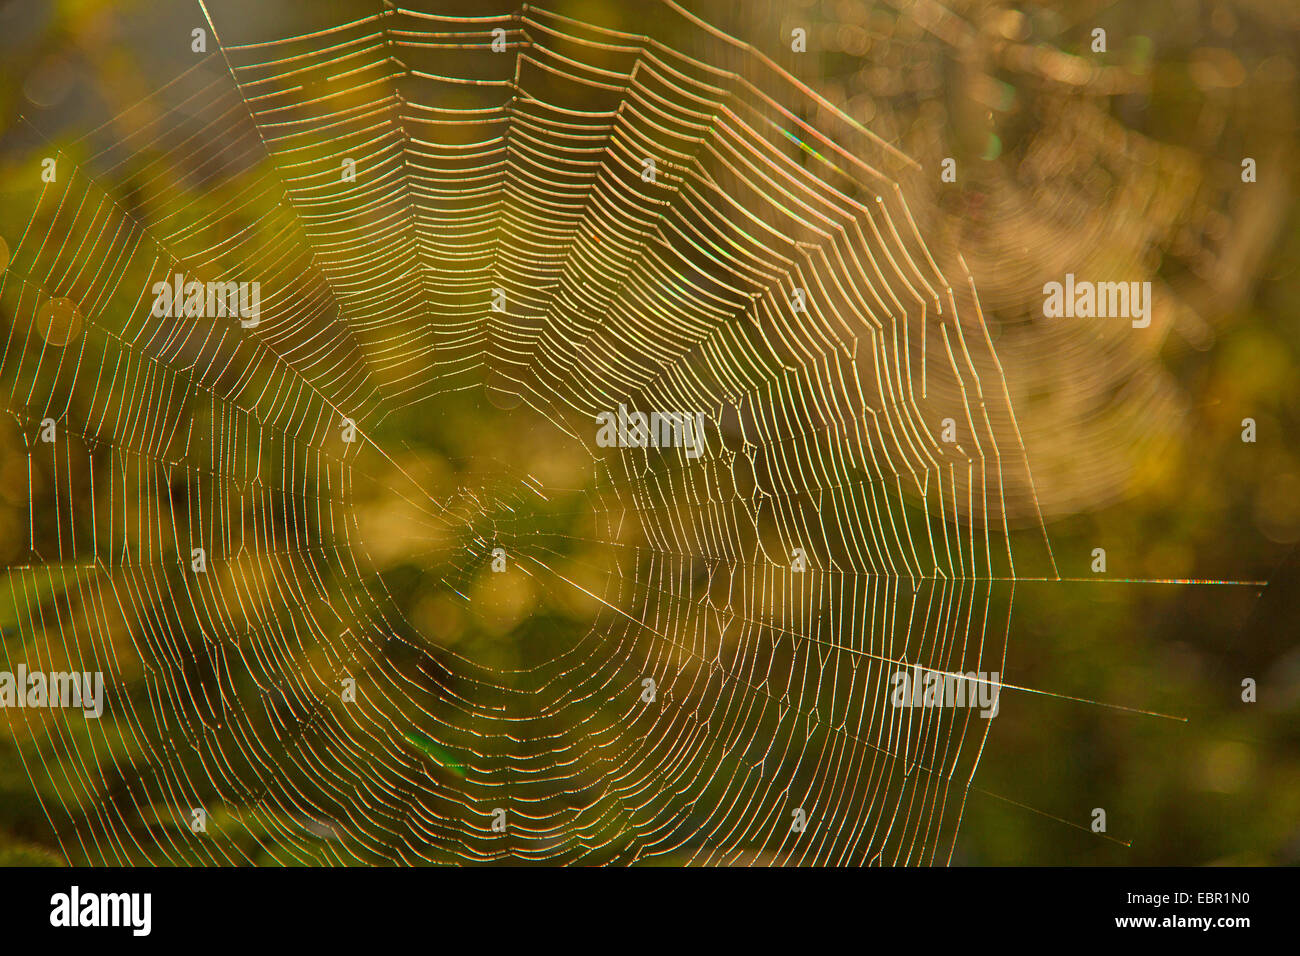 spider web, Germany, Rhineland-Palatinate Stock Photo